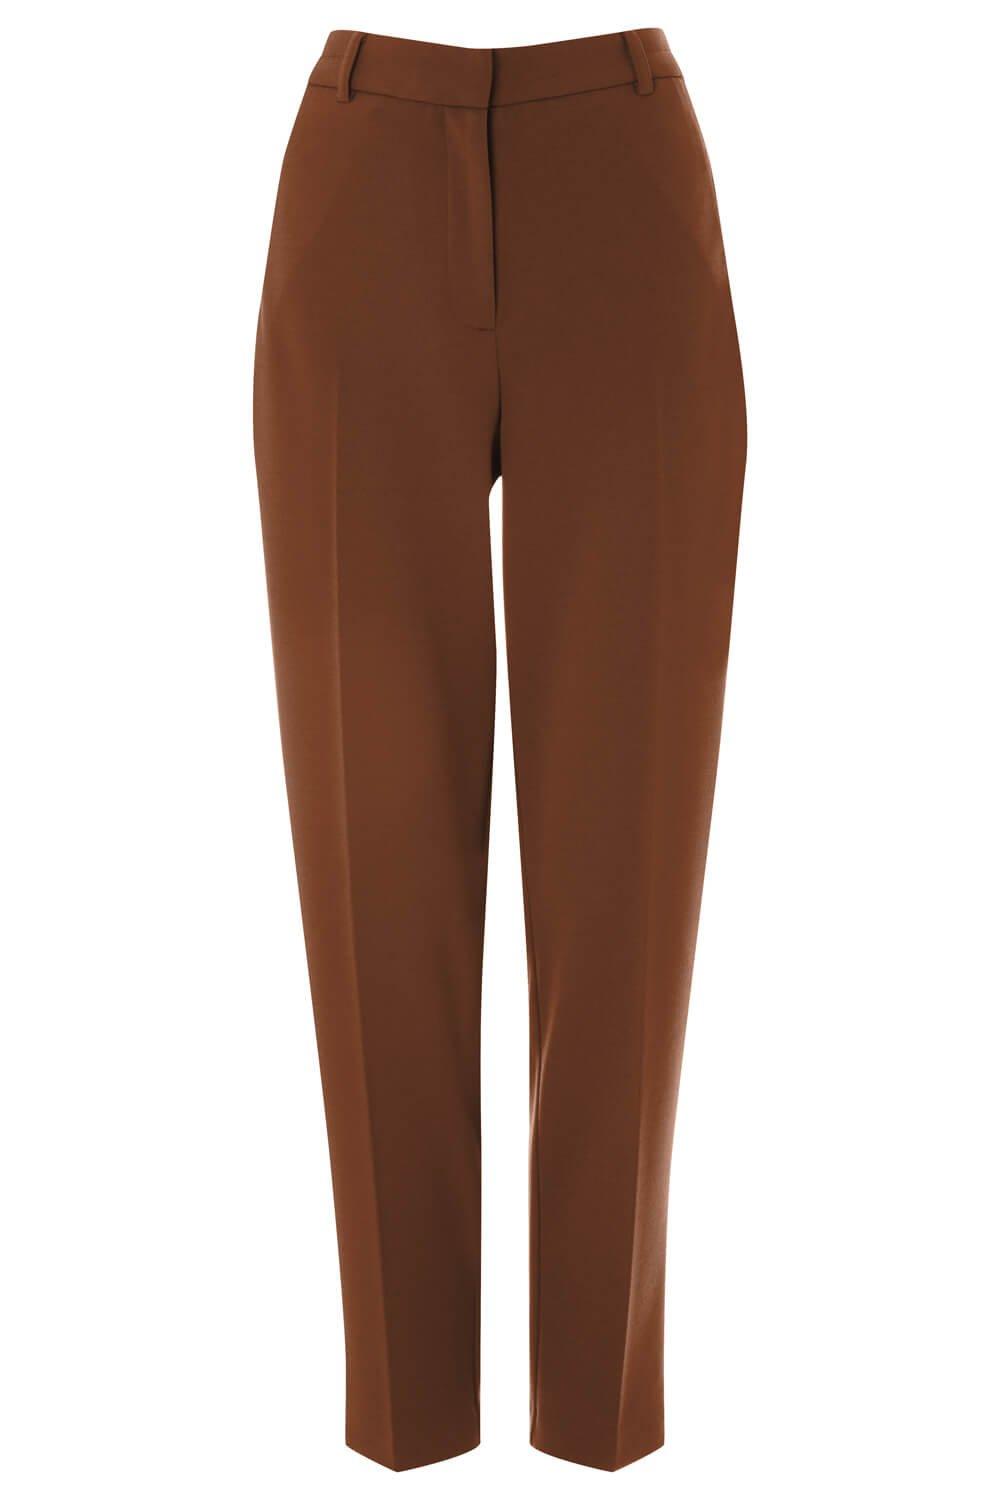 Короткие прямые эластичные брюки Roman, коричневый фото